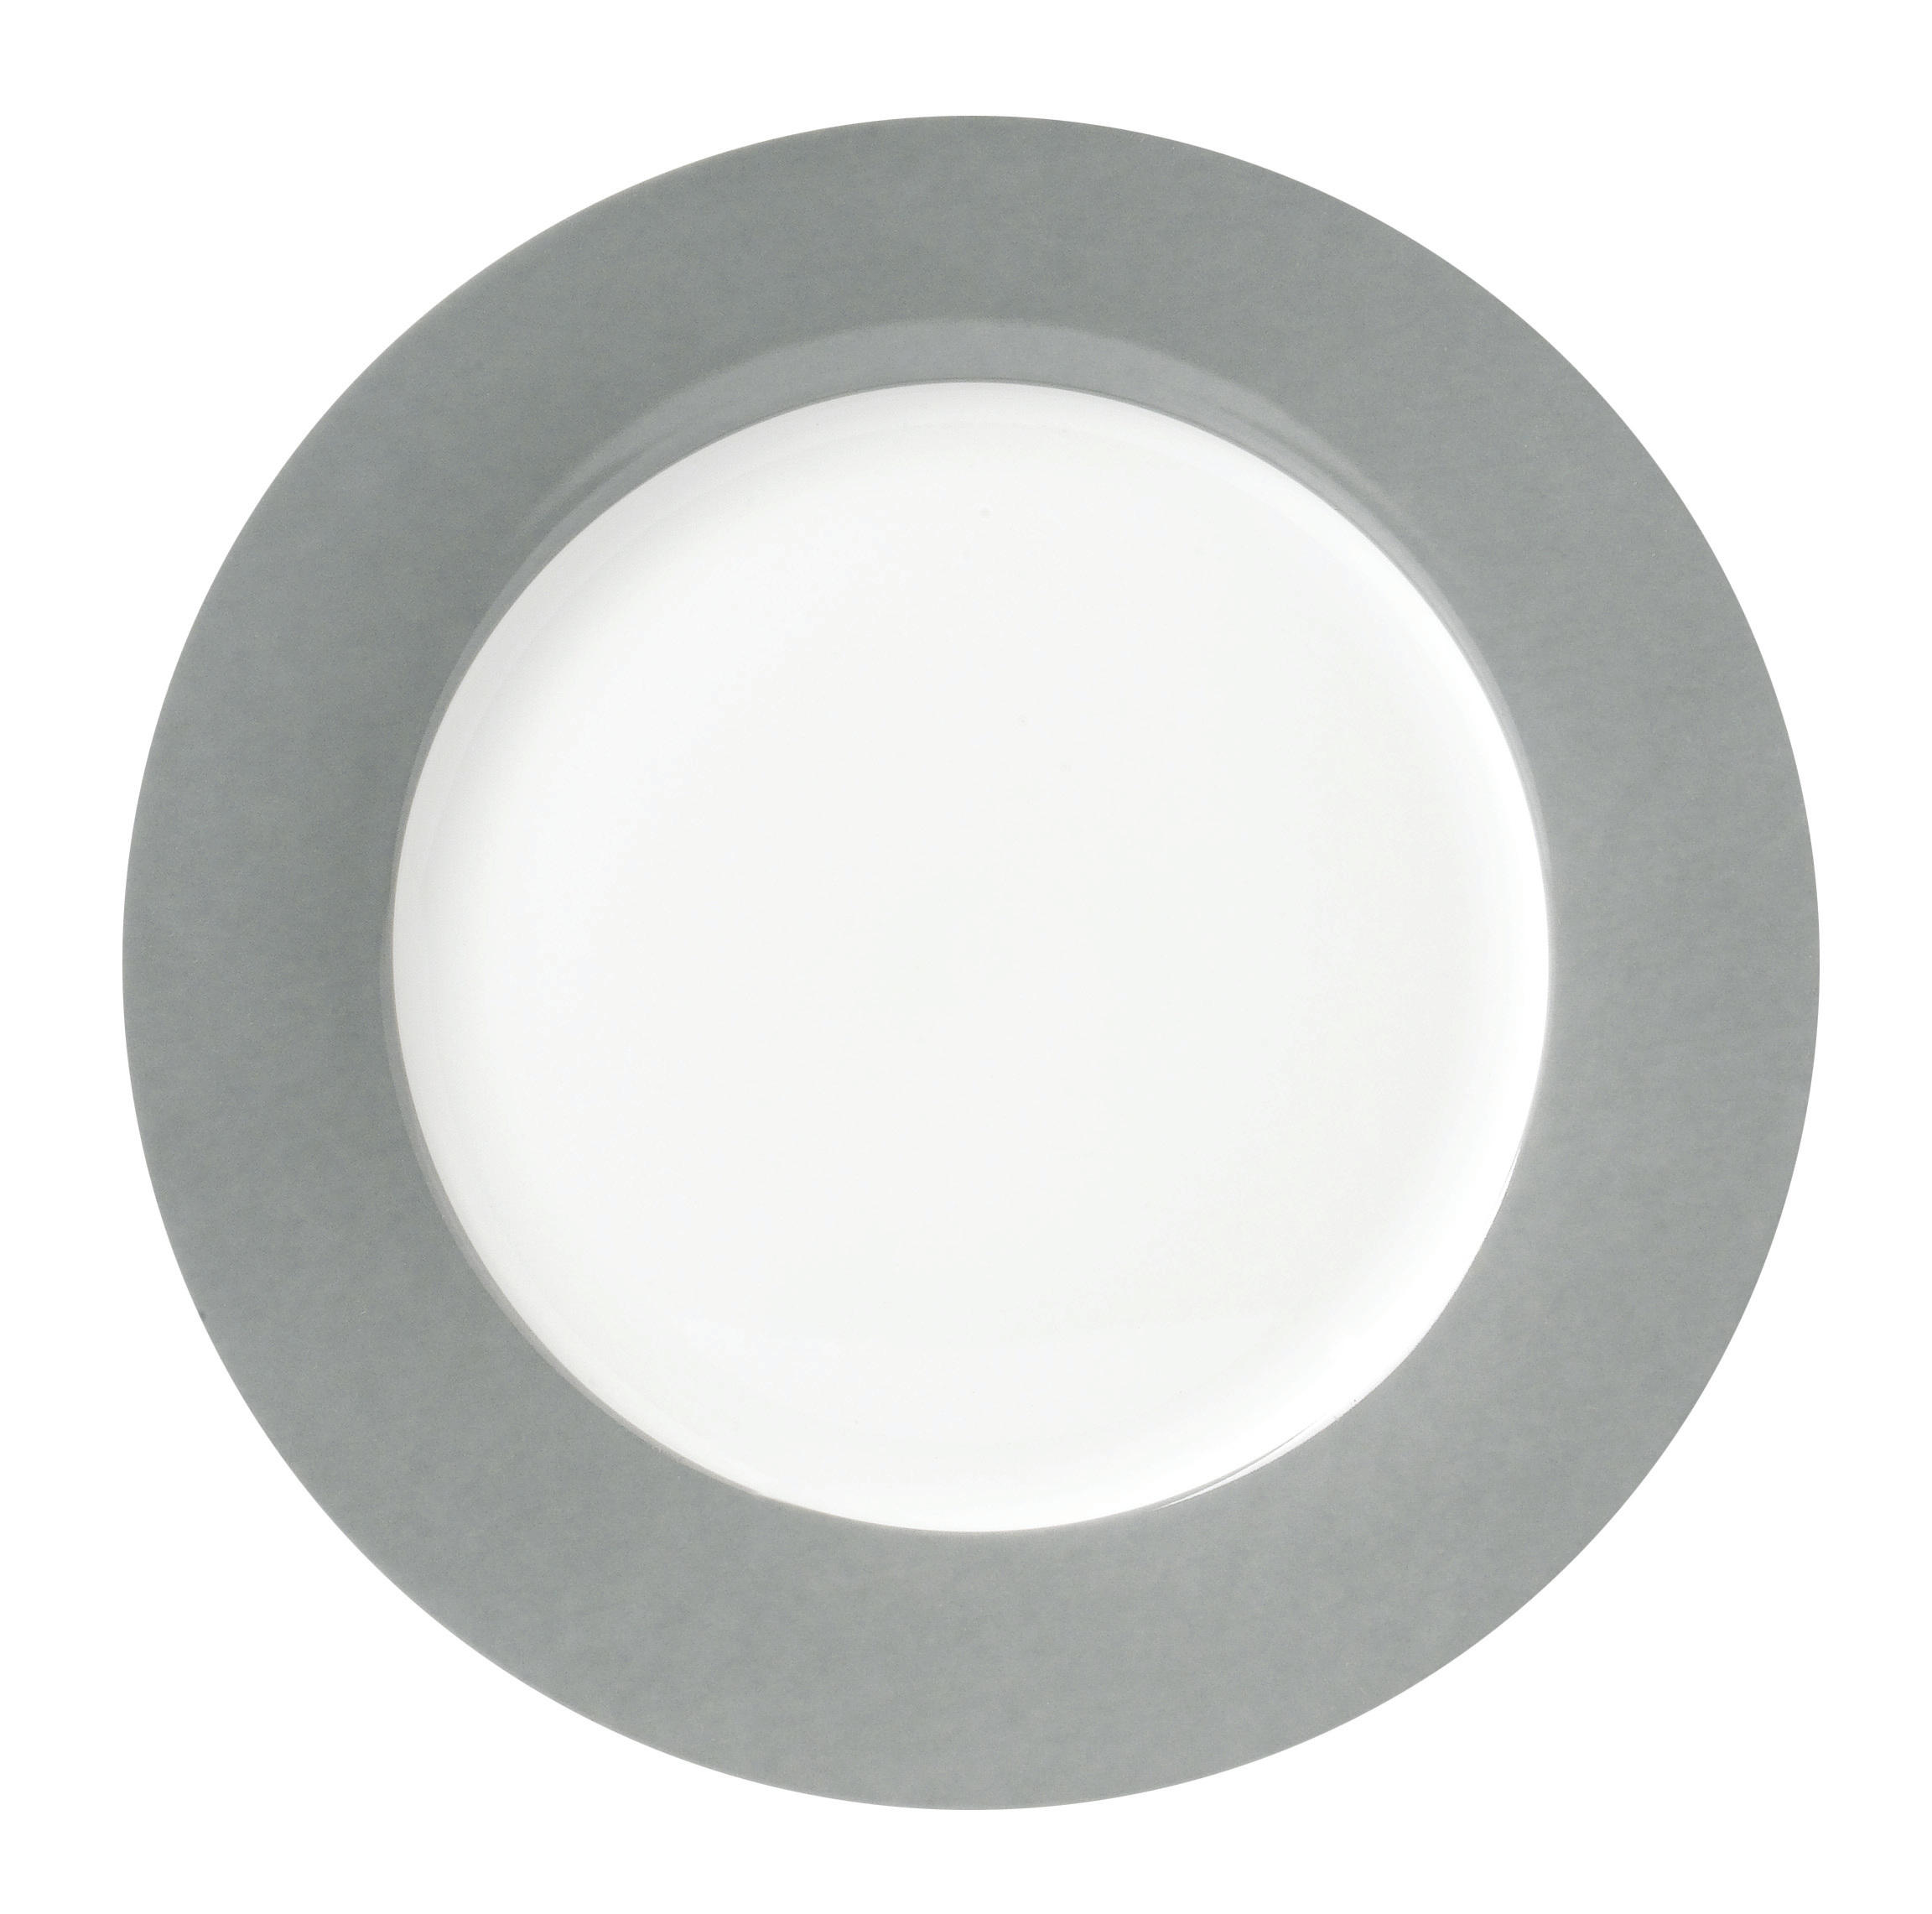 DESSERTTELLERSET VARIO 6-teilig  - Weiß/Grau, Basics, Keramik (20cm)